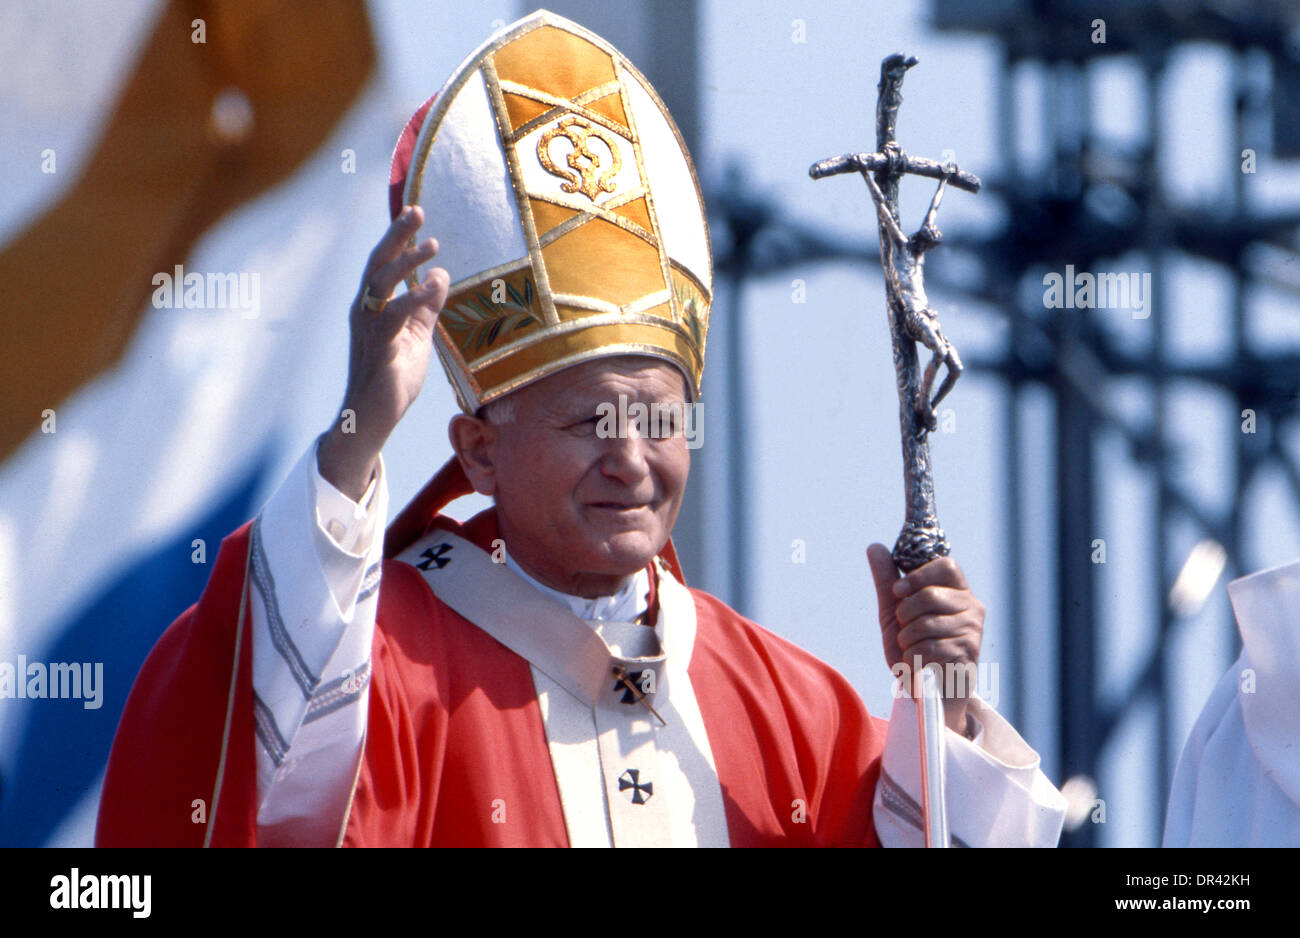 Visite du pape Jean-Paul II à Coventry Royaume-Uni 1982. Photo de DAVID BAGNALL Banque D'Images